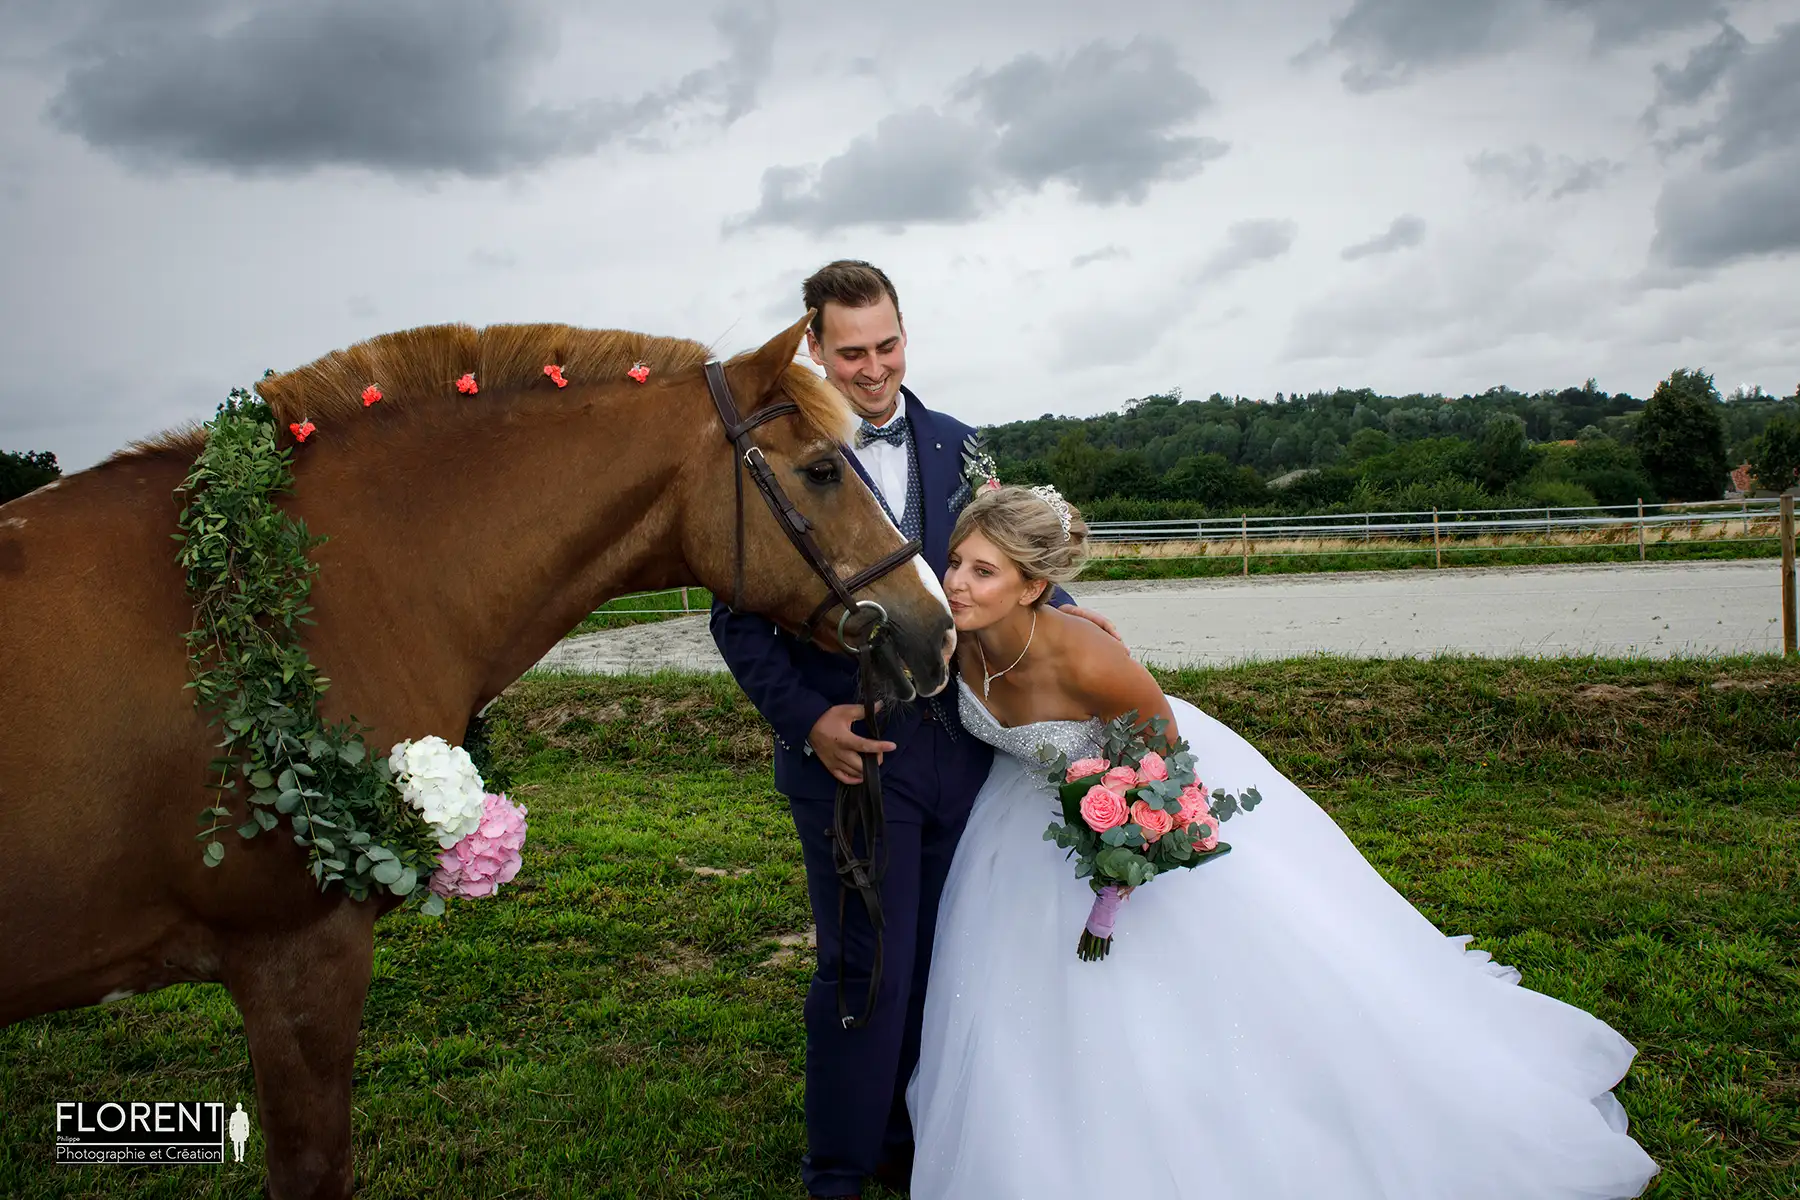 tendres baisers de la mariee à son cheval avec son epoux desvres lille moment unique florent photographe mariage boulogne sur mer lille le touquet desvres arras calais